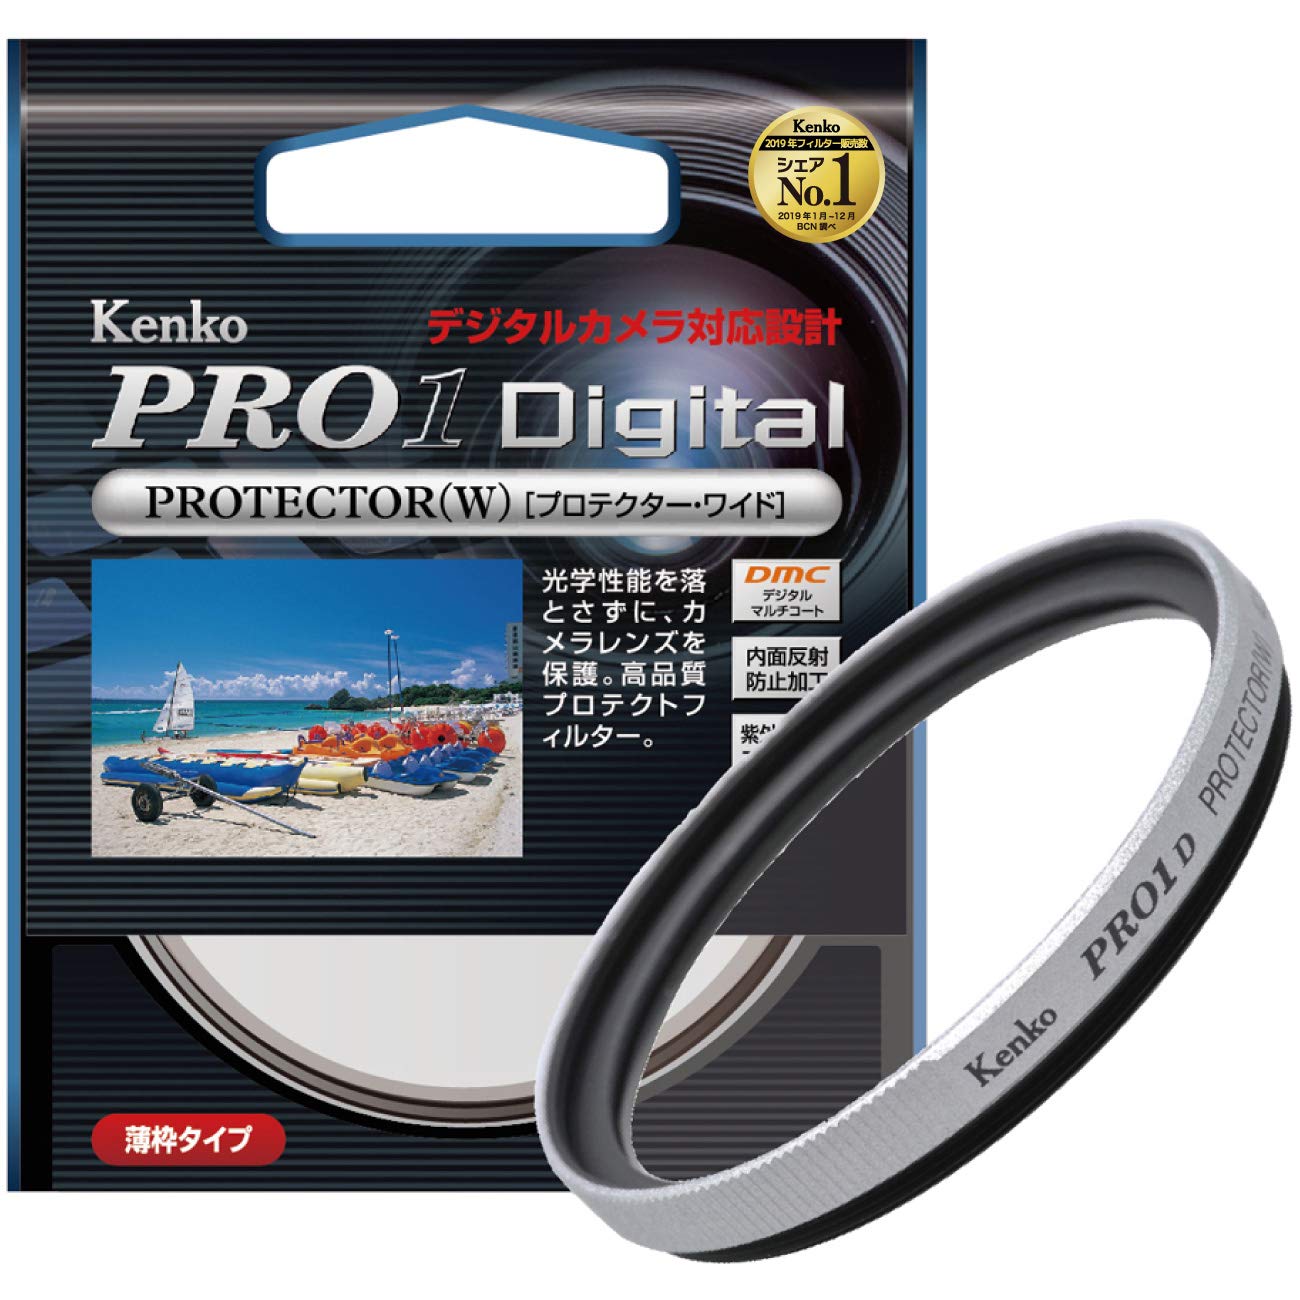 Kenko 49mm レンズフィルター PRO1D プロテクター シルバー枠 レンズ保護用 薄枠 日本製 249529